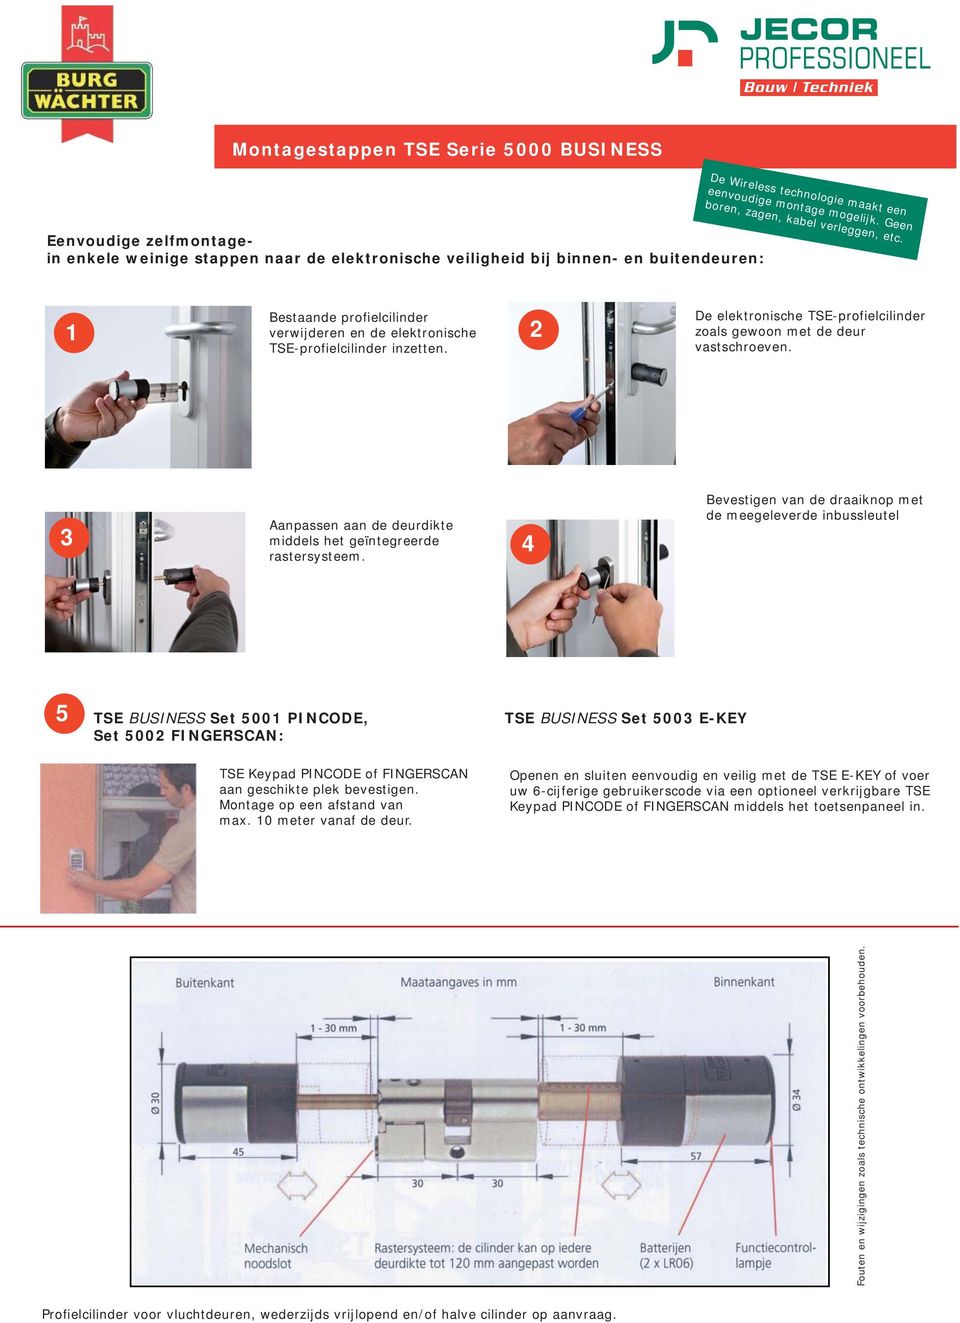 1 2 De elektronische TSE-profielcilinder zoals gewoon met de deur vastschroeven. Aanpassen aan de deurdikte middels het geïntegreerde rastersysteem.